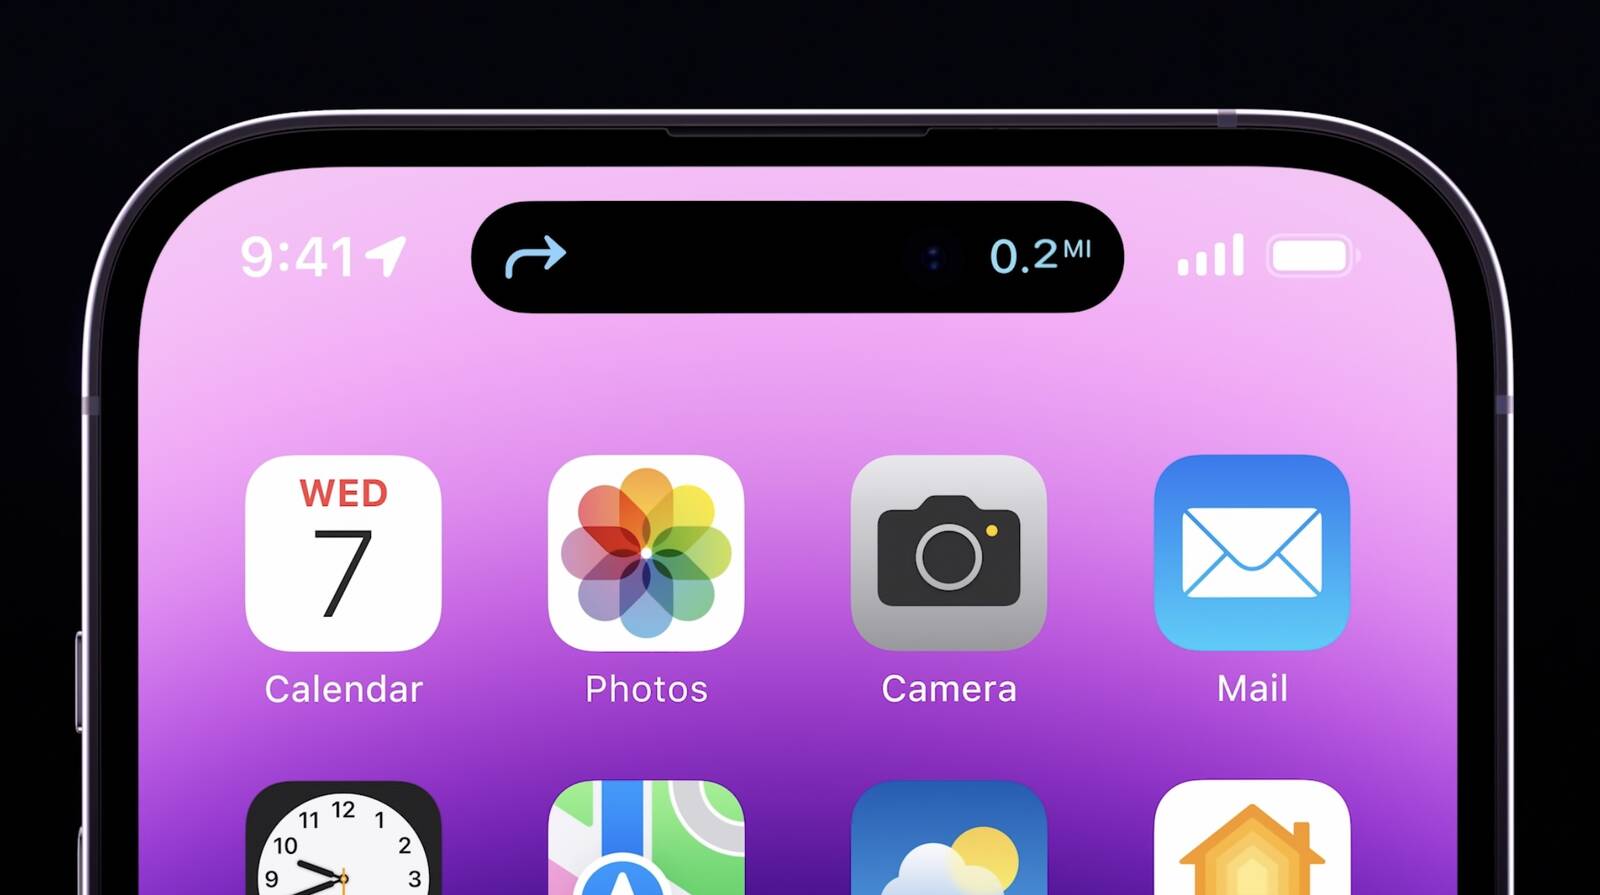 Tận hưởng cảm giác thăng hoa với iPhone 14 Pro và Pro Max mới ra mắt với màu tím độc đáo và đẹp mắt. Được trang bị nhiều tính năng mới và tối ưu hóa cho hiệu suất tốt nhất, những chiếc điện thoại này sẽ thực sự làm hài lòng người dùng khó tính nhất. Hãy theo dõi và trở thành người đầu tiên sở hữu những mẫu iPhone tuyệt đẹp này.